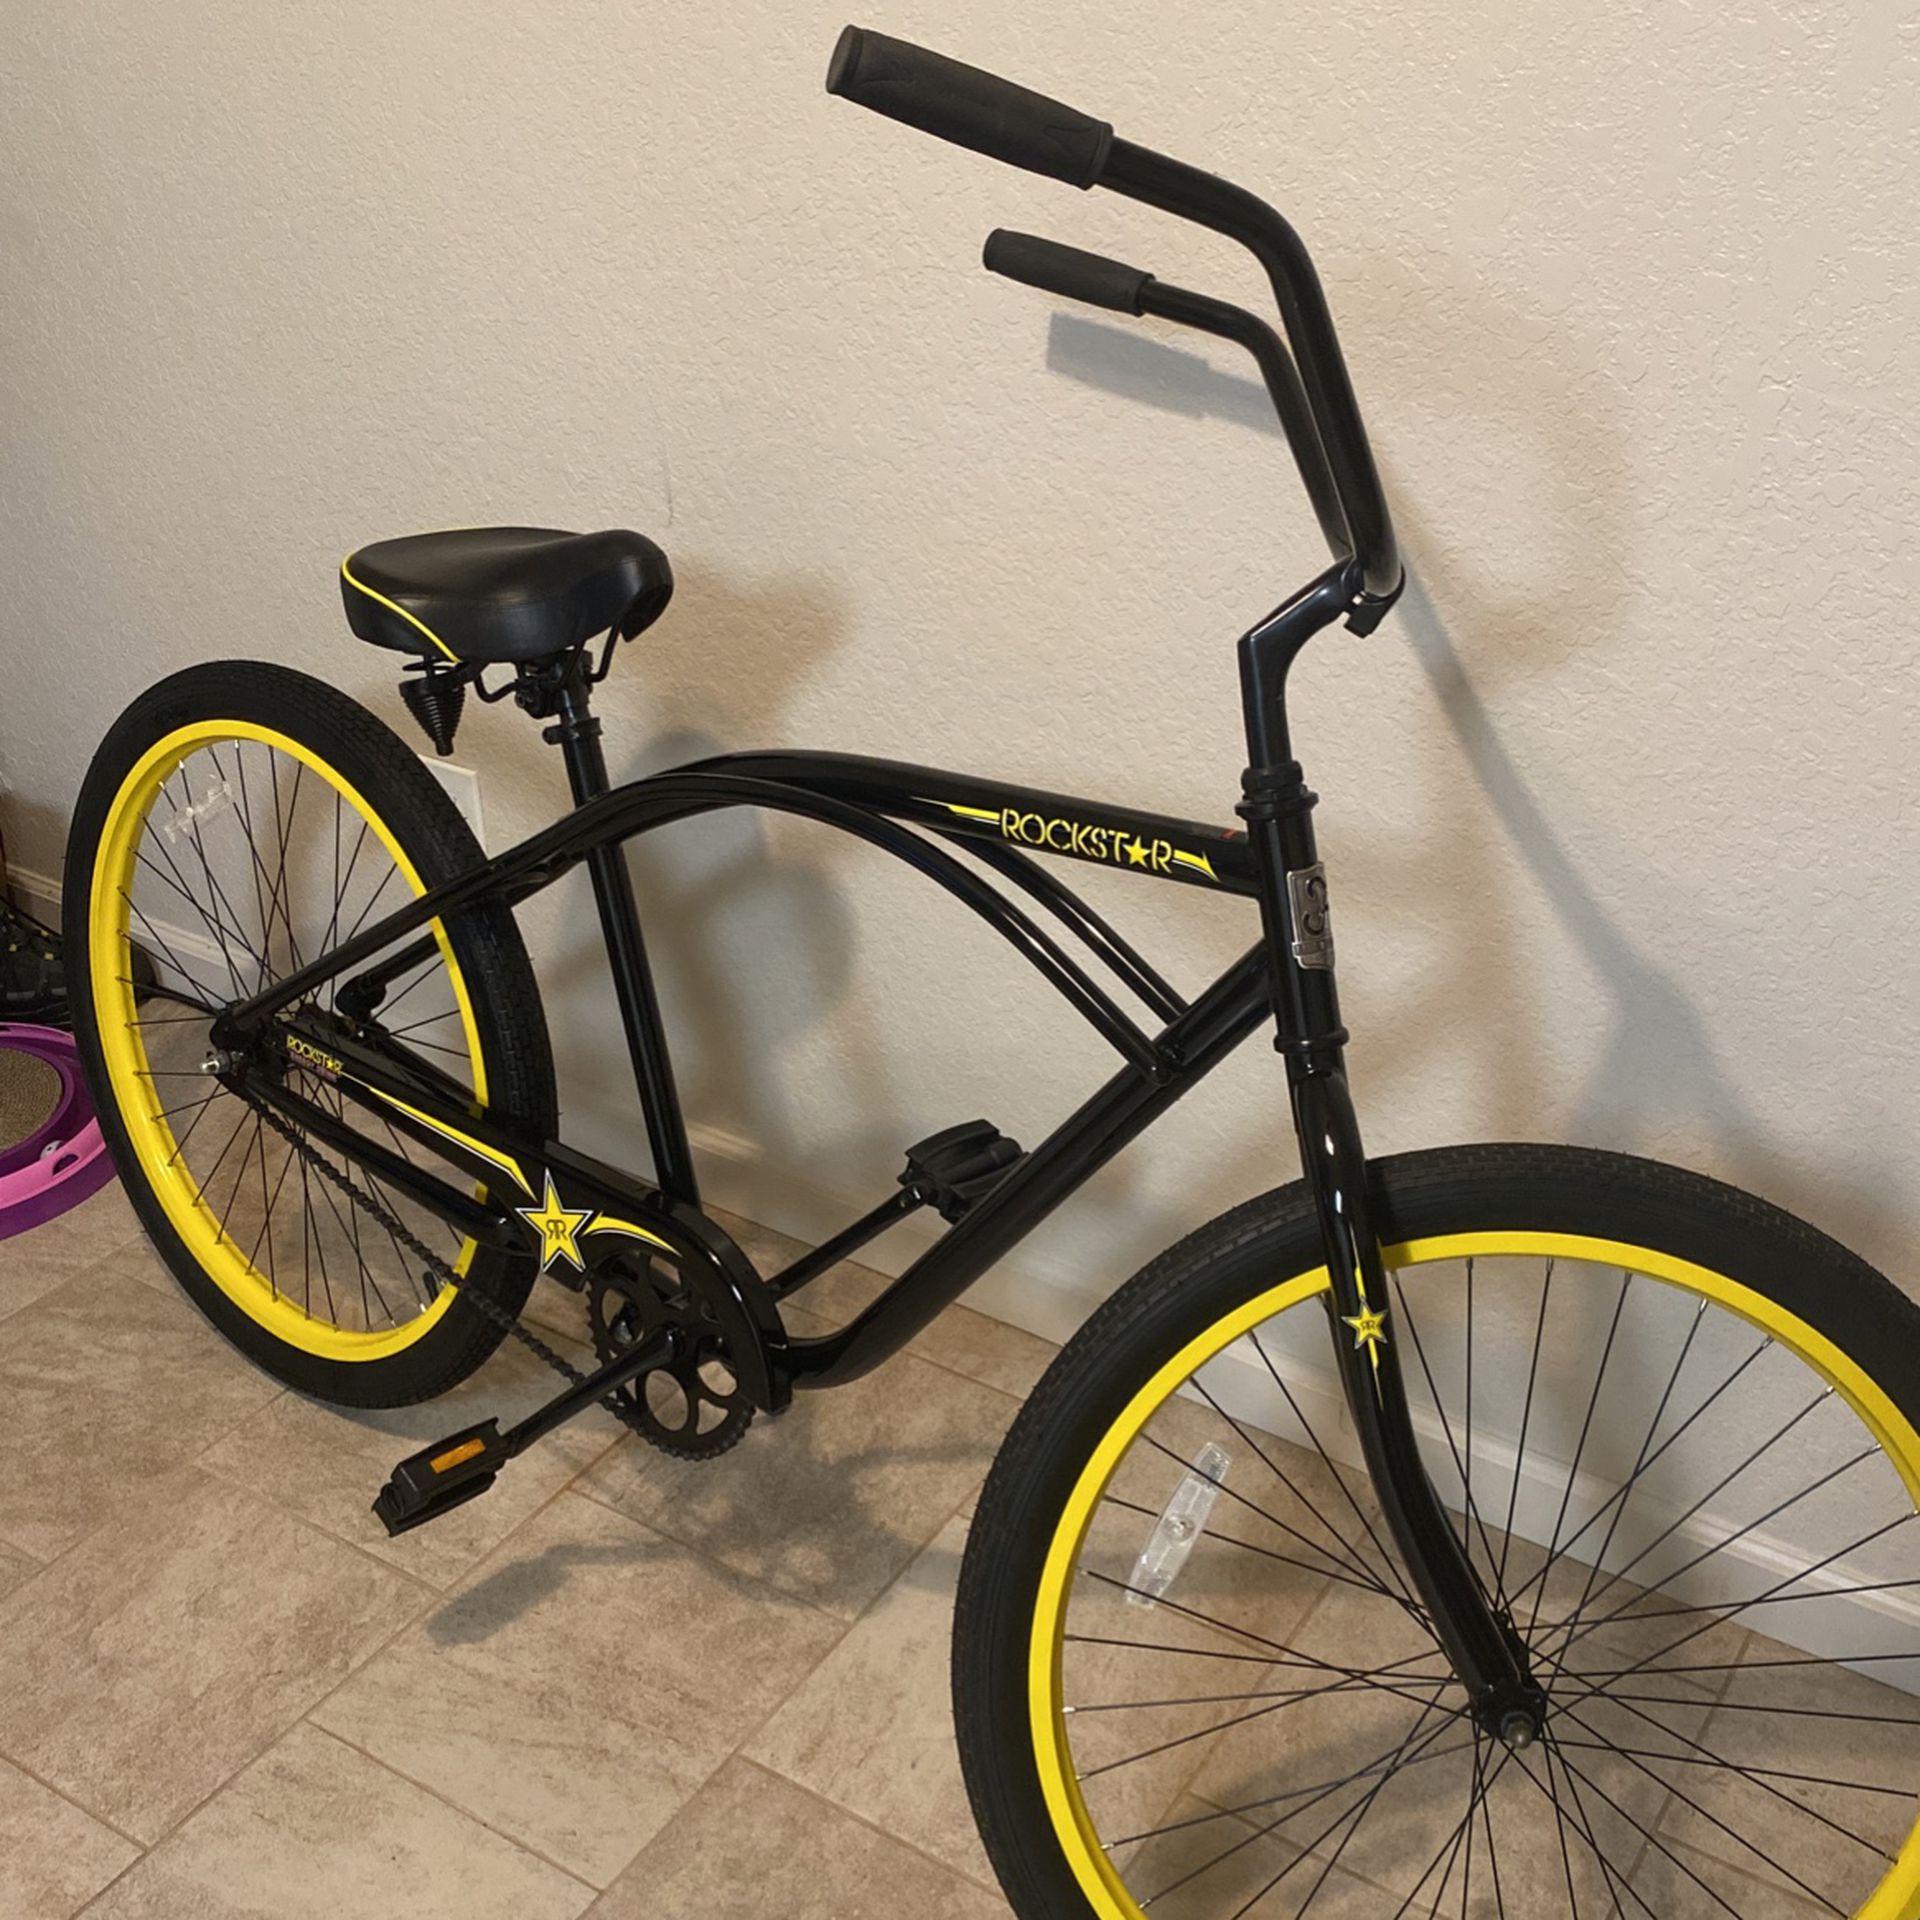 Felt Limited Edition Rockstar Cruiser Bicycle